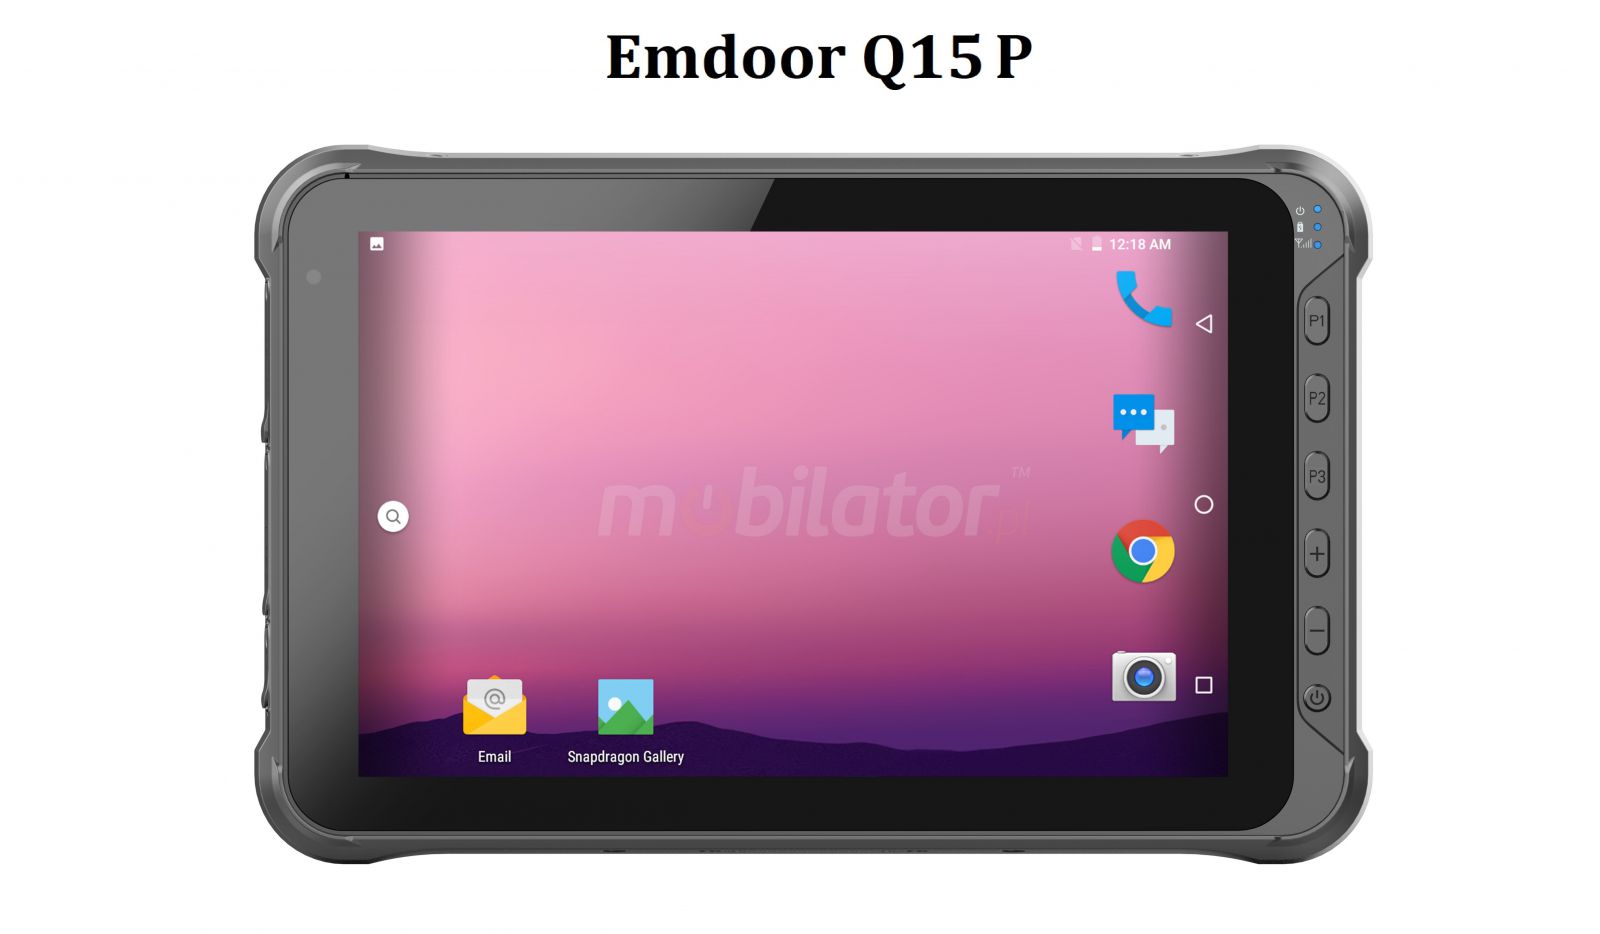 Emdoor Q15P v.10 - Odporny na upadki dziesiciocalowy tablet ze zczem RS232, Androidem 10.0 GMS, 4G, 4GB RAM pamici, dyskiem 64GB, czytnikiem kodw 1D N4313Honeywell